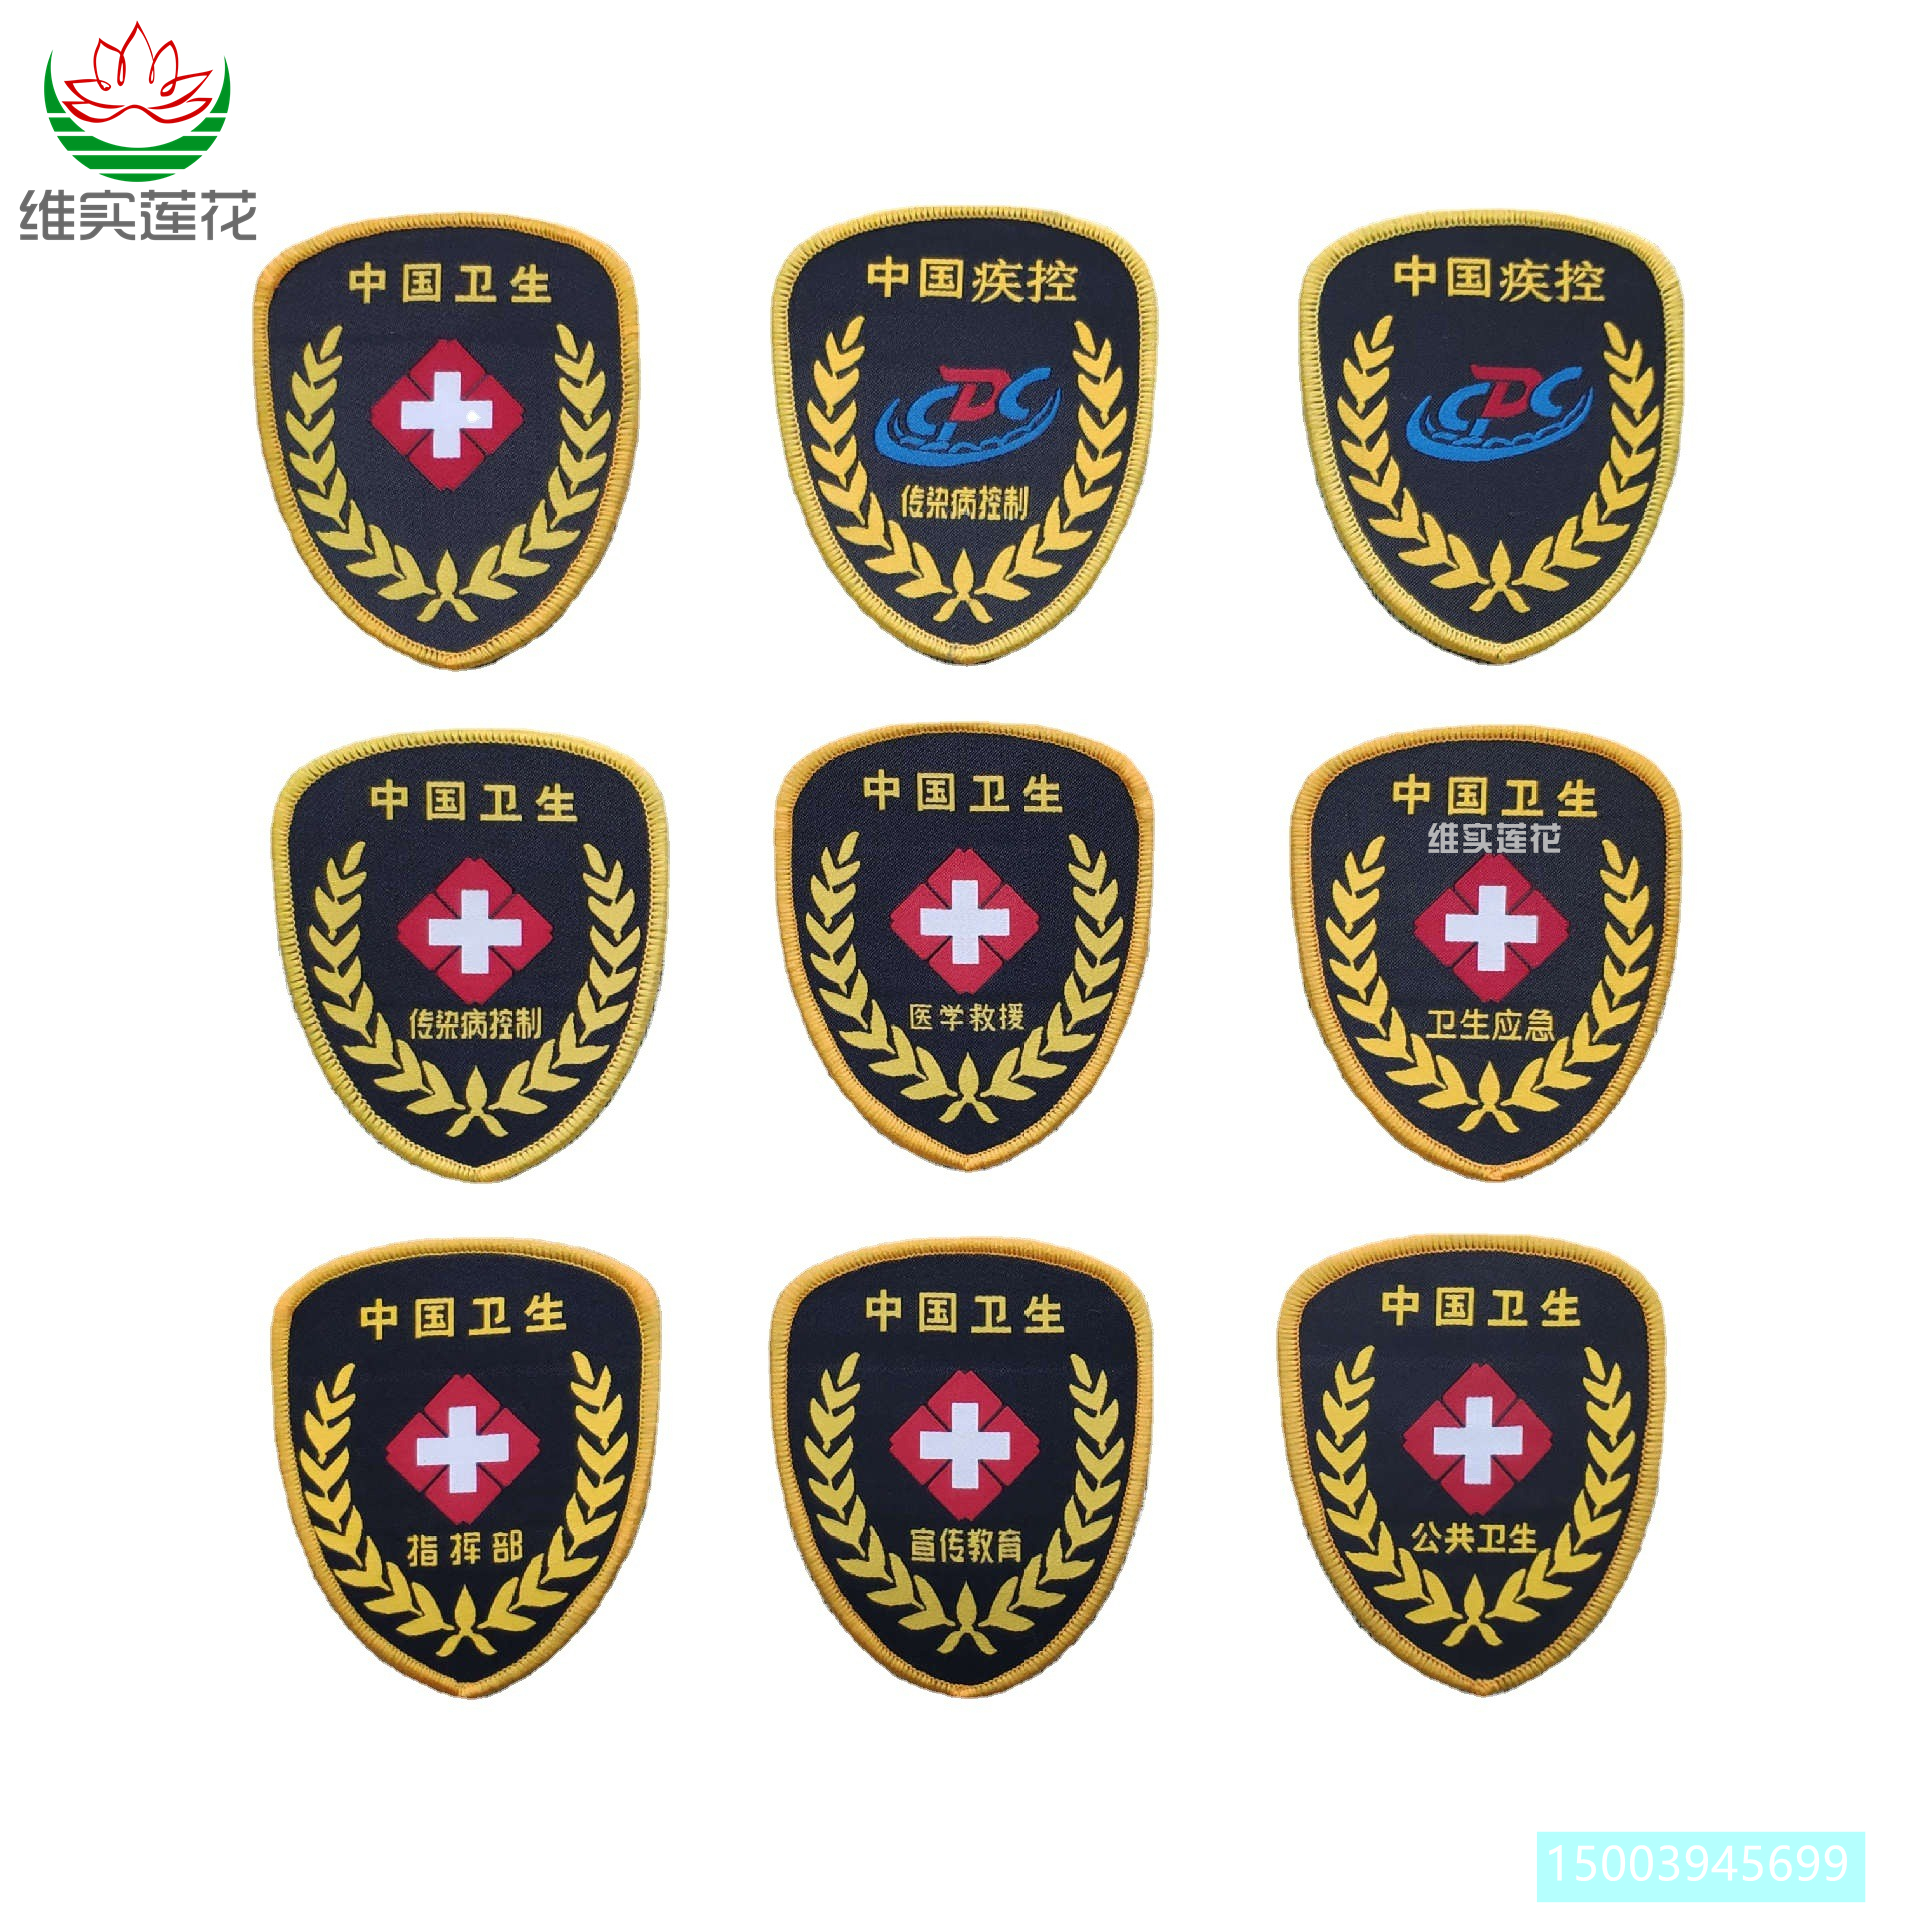 中国卫生臂章疾控中心袖标传染病控制医学救援卫生应急演练标志